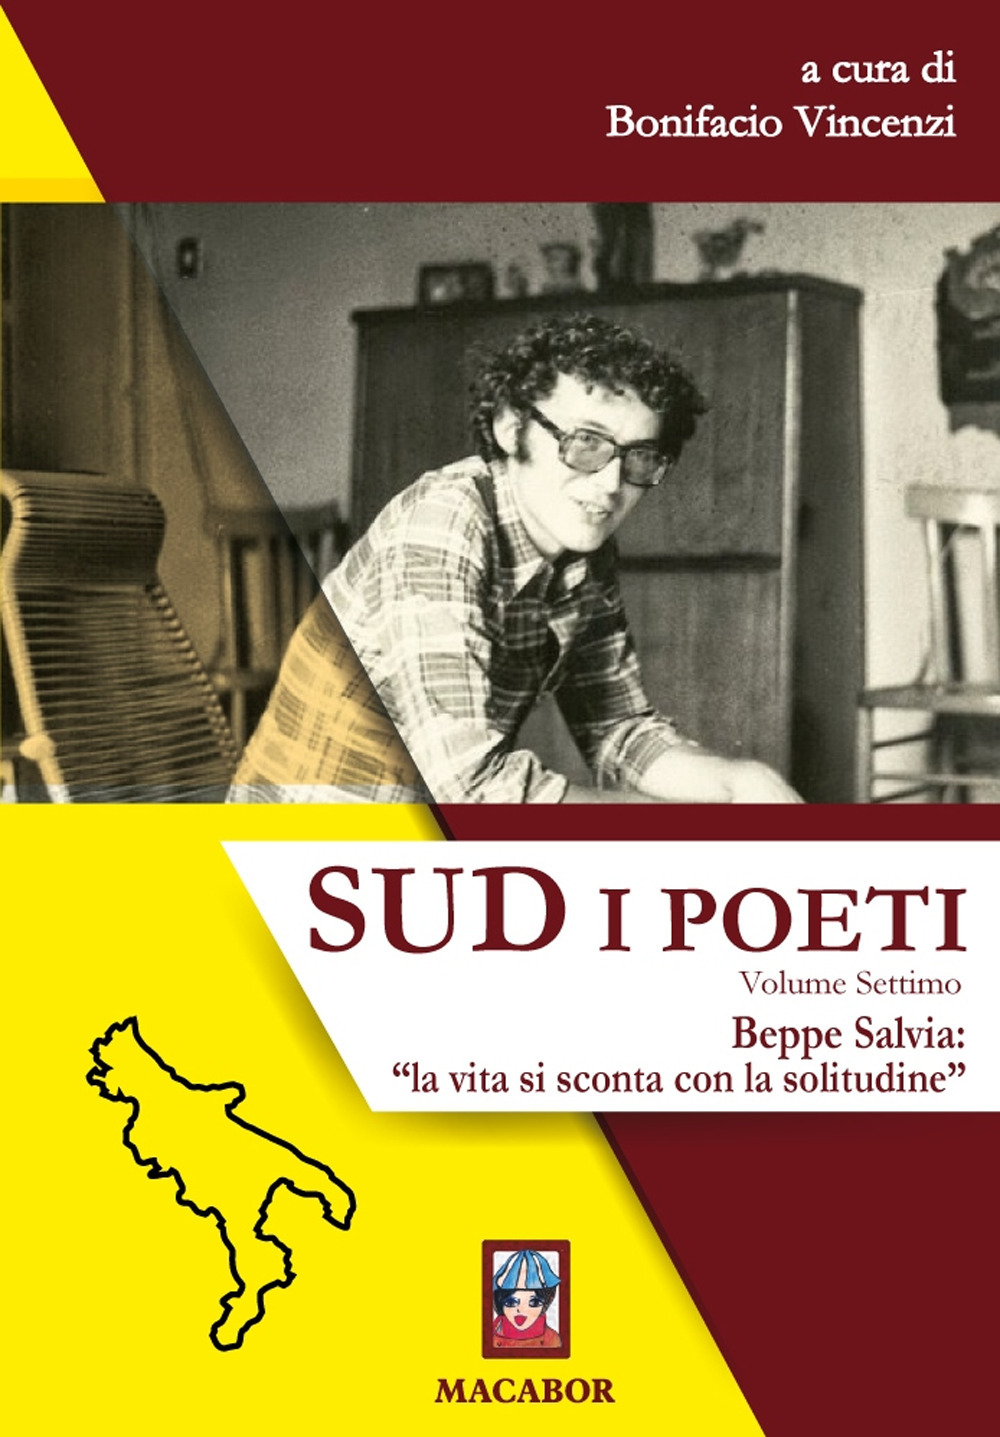 Libri Sud. I Poeti Vol 07 NUOVO SIGILLATO, EDIZIONE DEL 20/07/2020 SUBITO DISPONIBILE